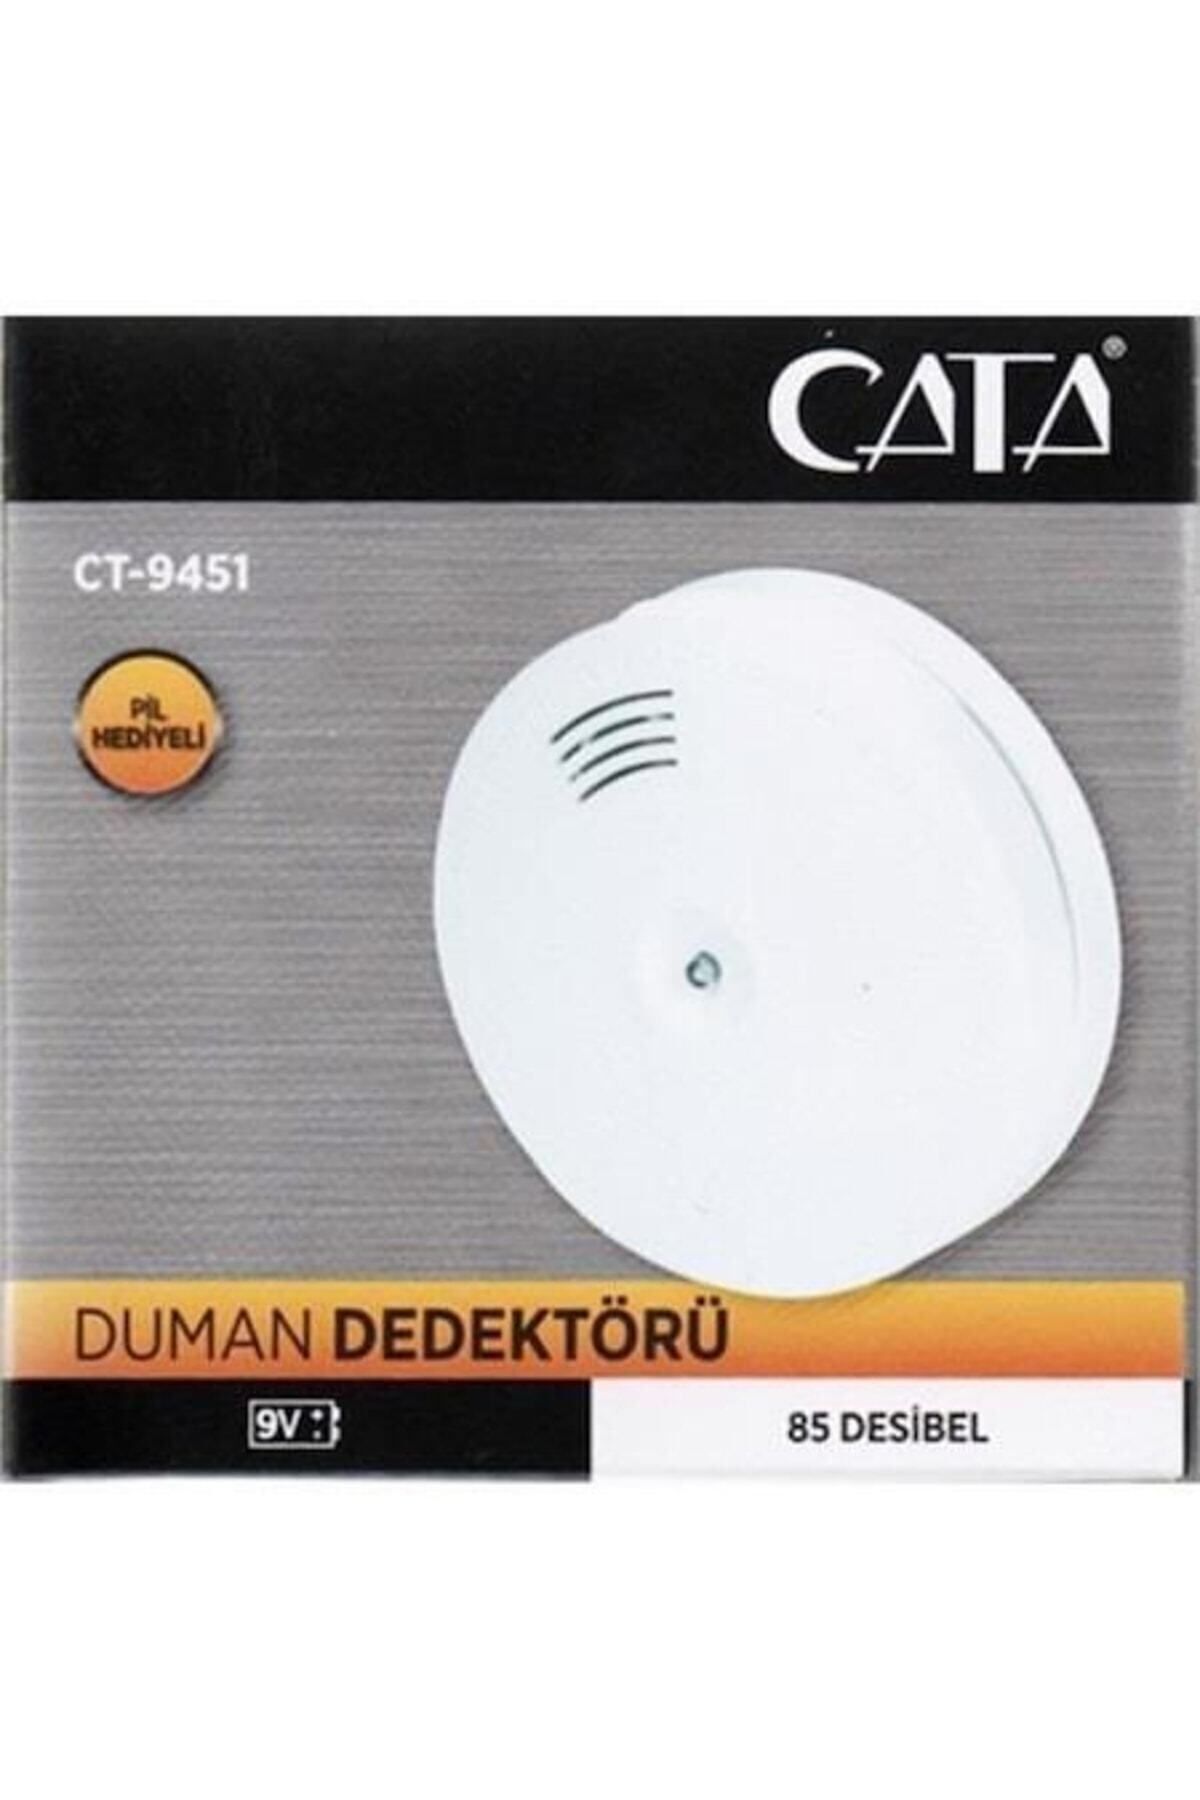 Cata Ct-9451 Duman Dedektörü